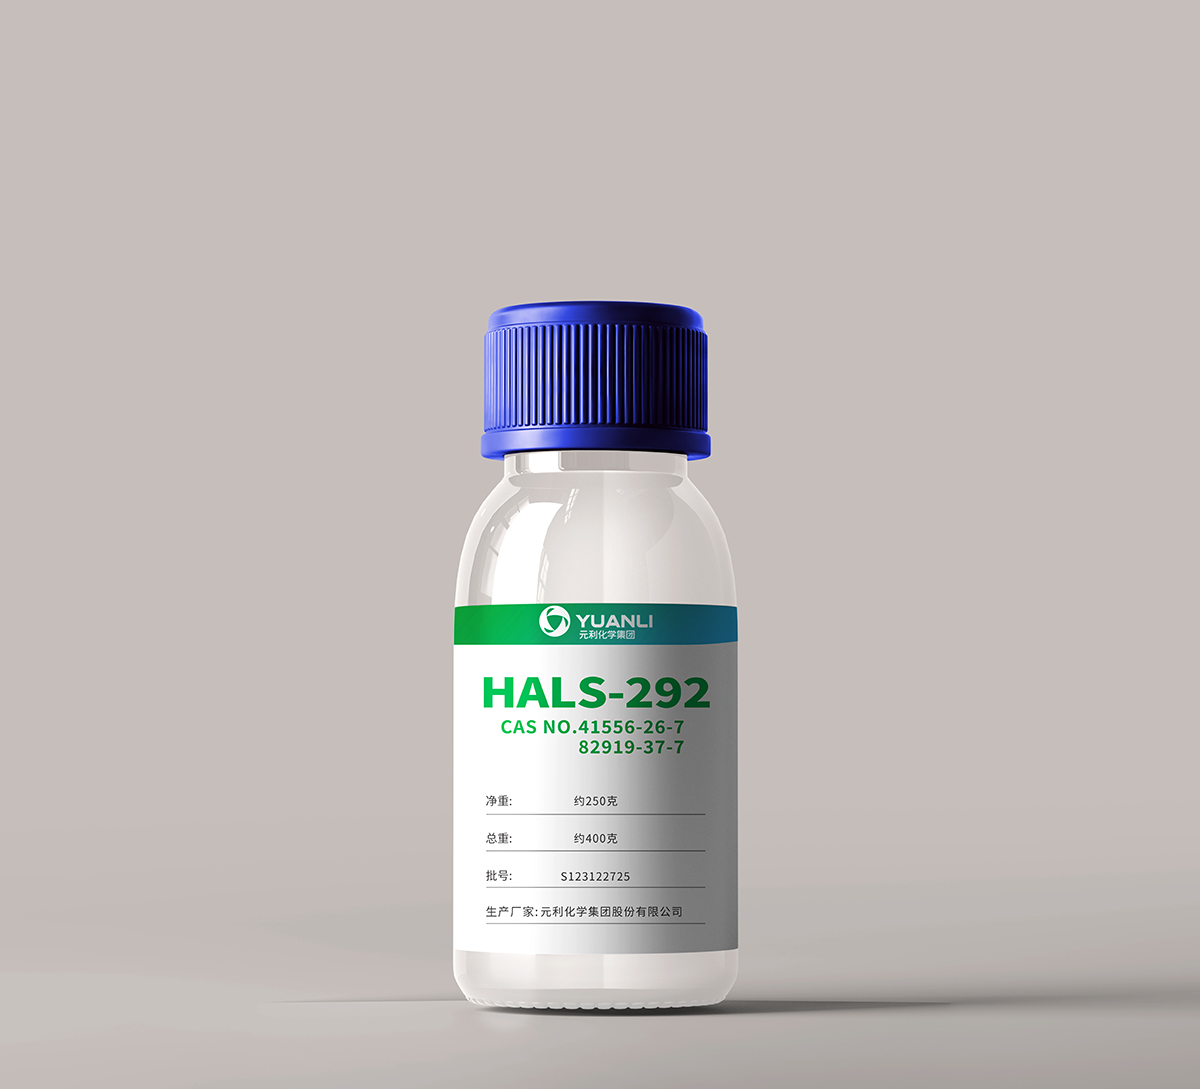 HALS-292